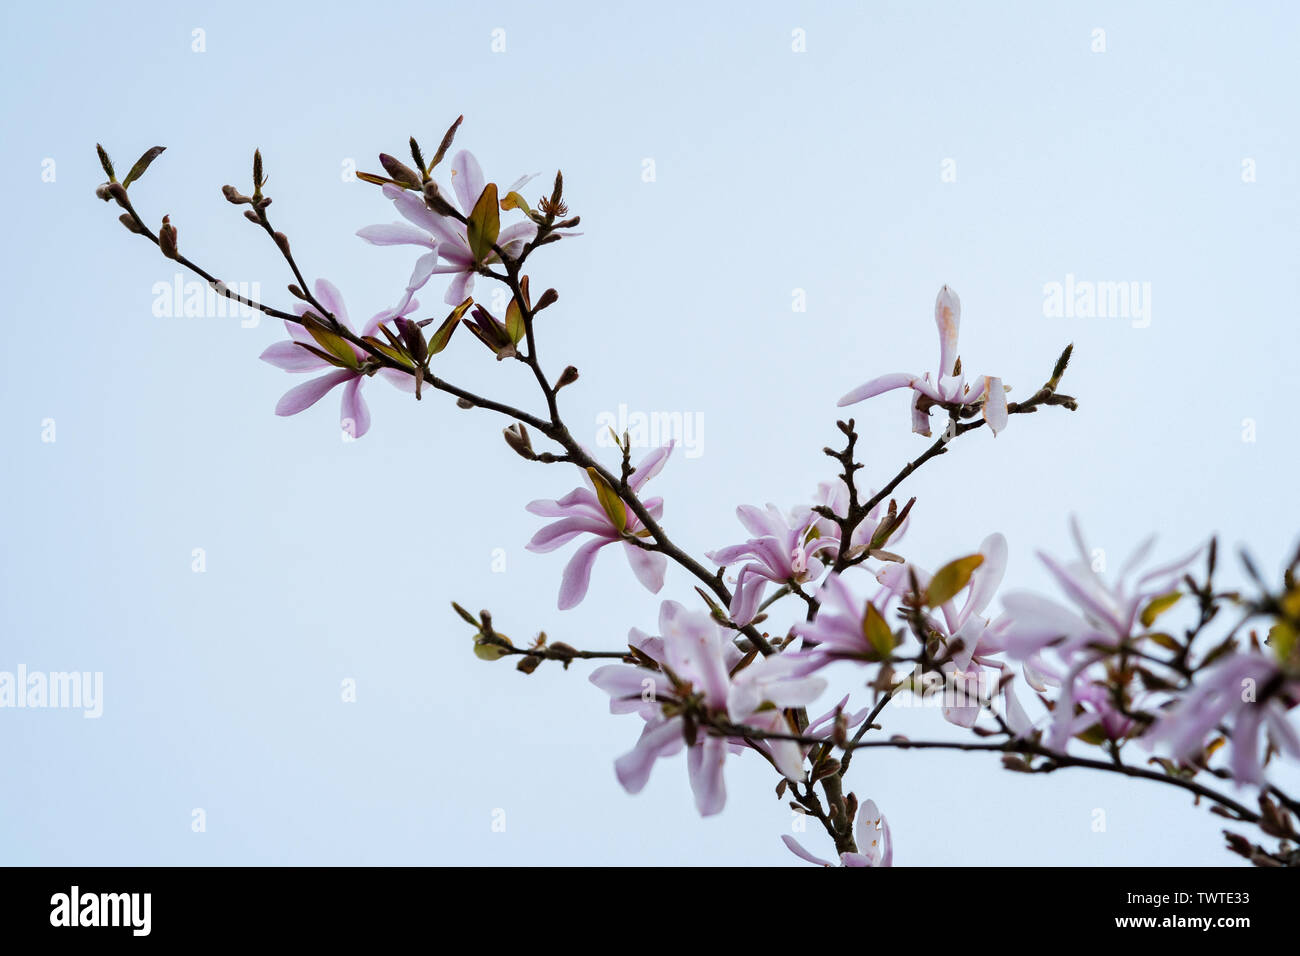 (Magnolia stellata rosea) Blumen in voller Blüte an Zweig gegen eine Konturlose grau-blauen Himmel; Querformat. Stockfoto